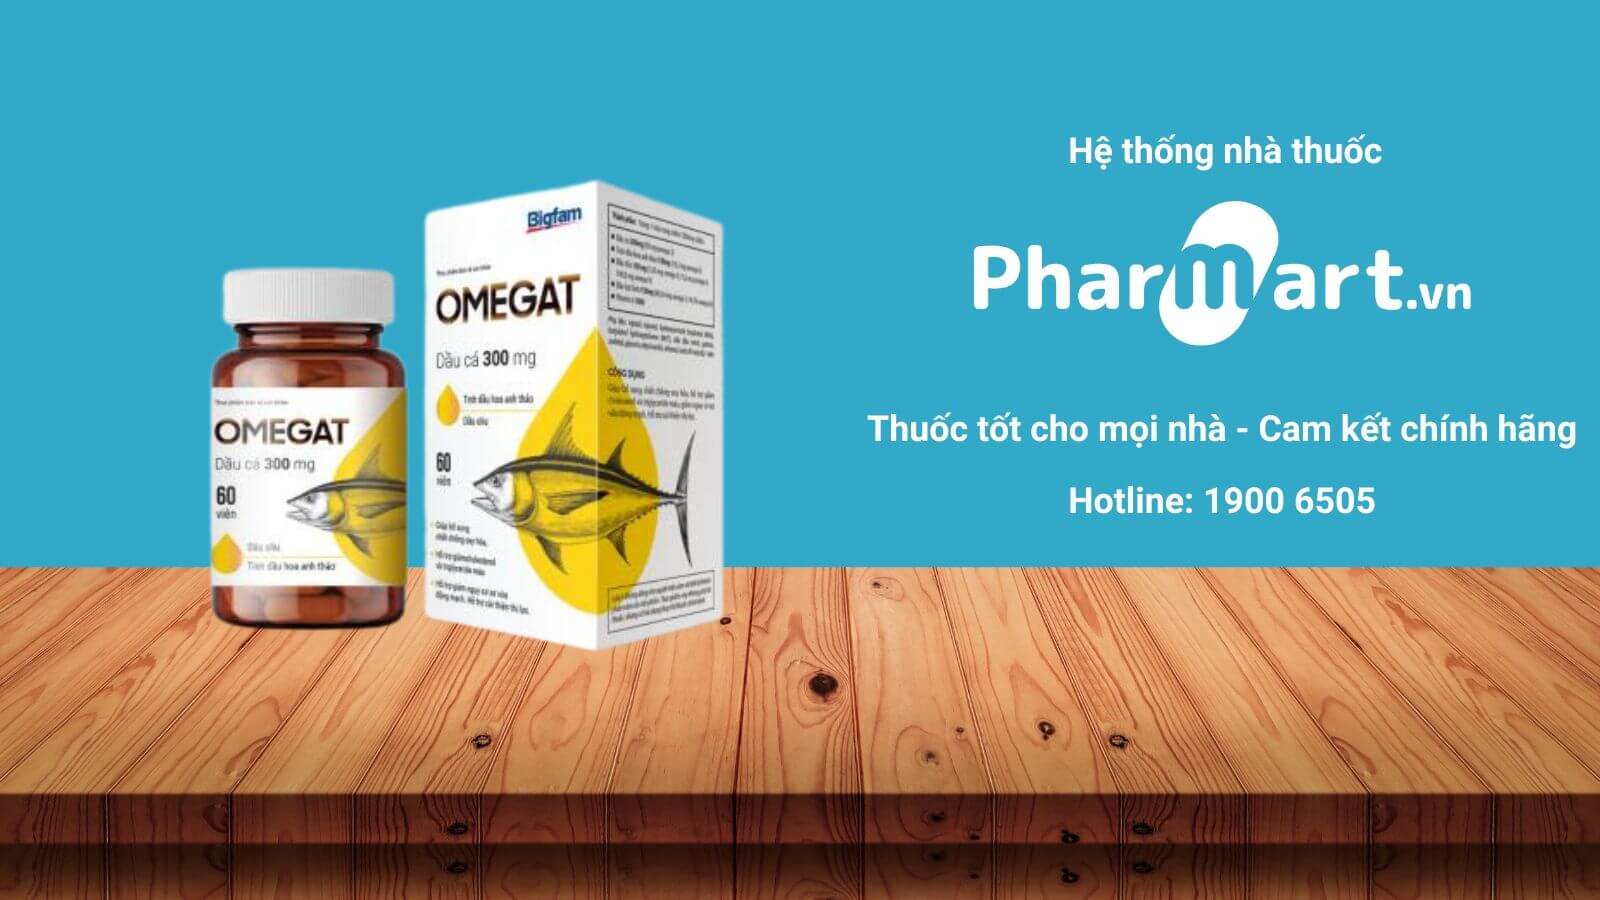 Mua viên uống Omegat chính hãng tại Pharmart.vn